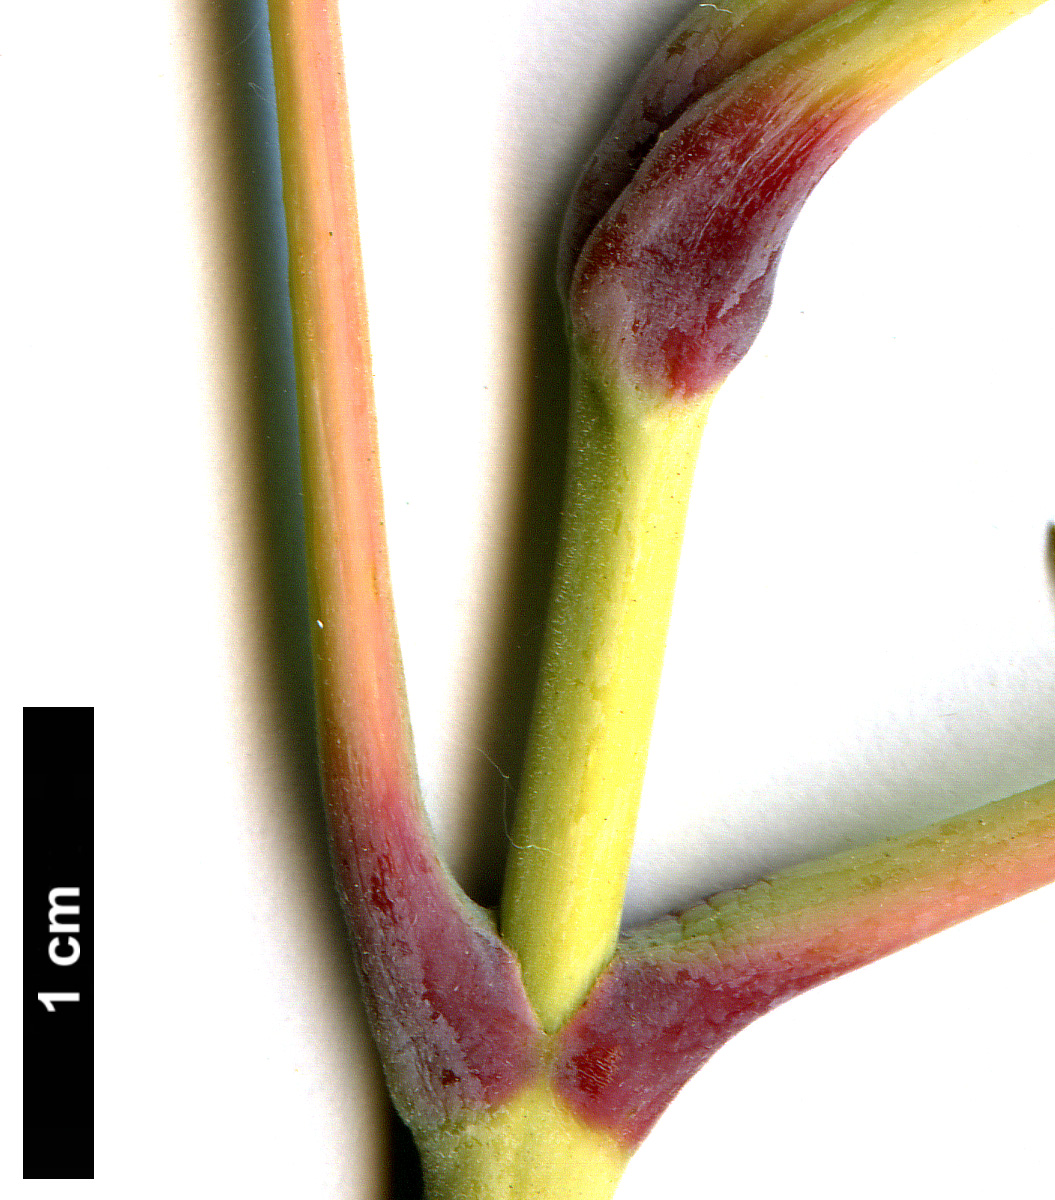 High resolution image: Family: Sapindaceae - Genus: Acer - Taxon: negundo - SpeciesSub: 'Auratum'